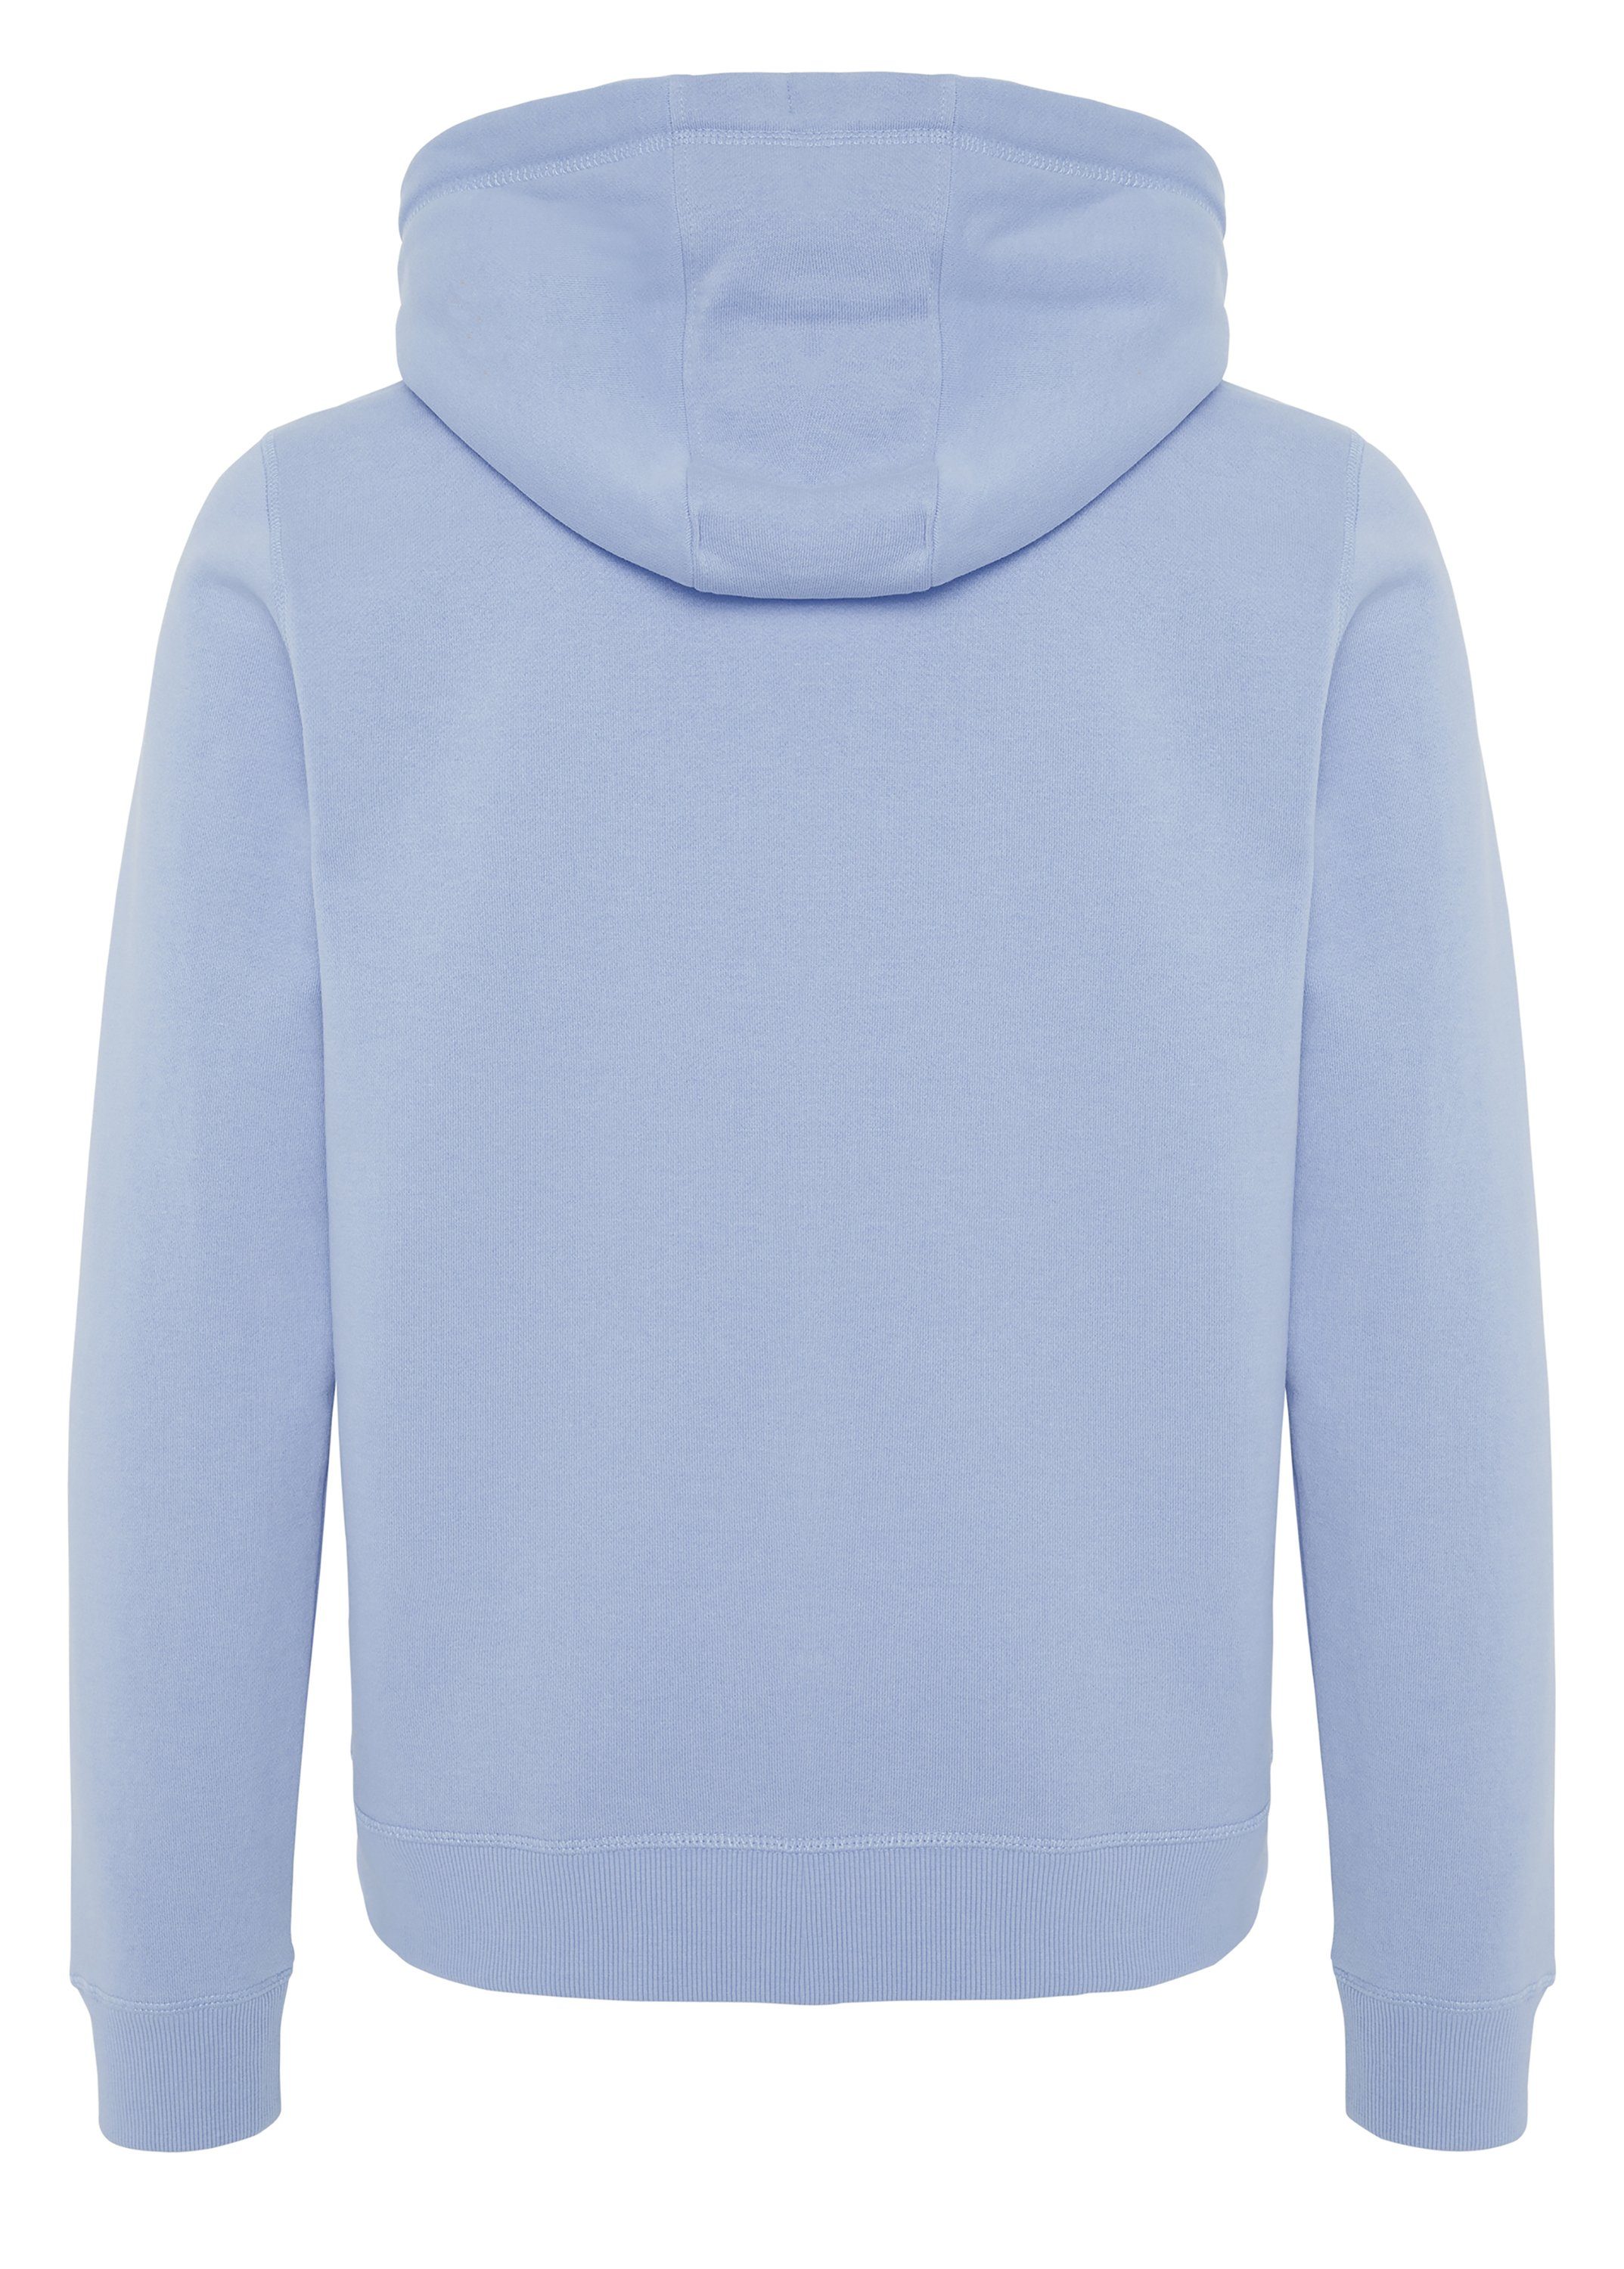 Polo Sylt Kapuzensweatshirt aus mit Label-Motiv Baumwollmix Brunnera Blue